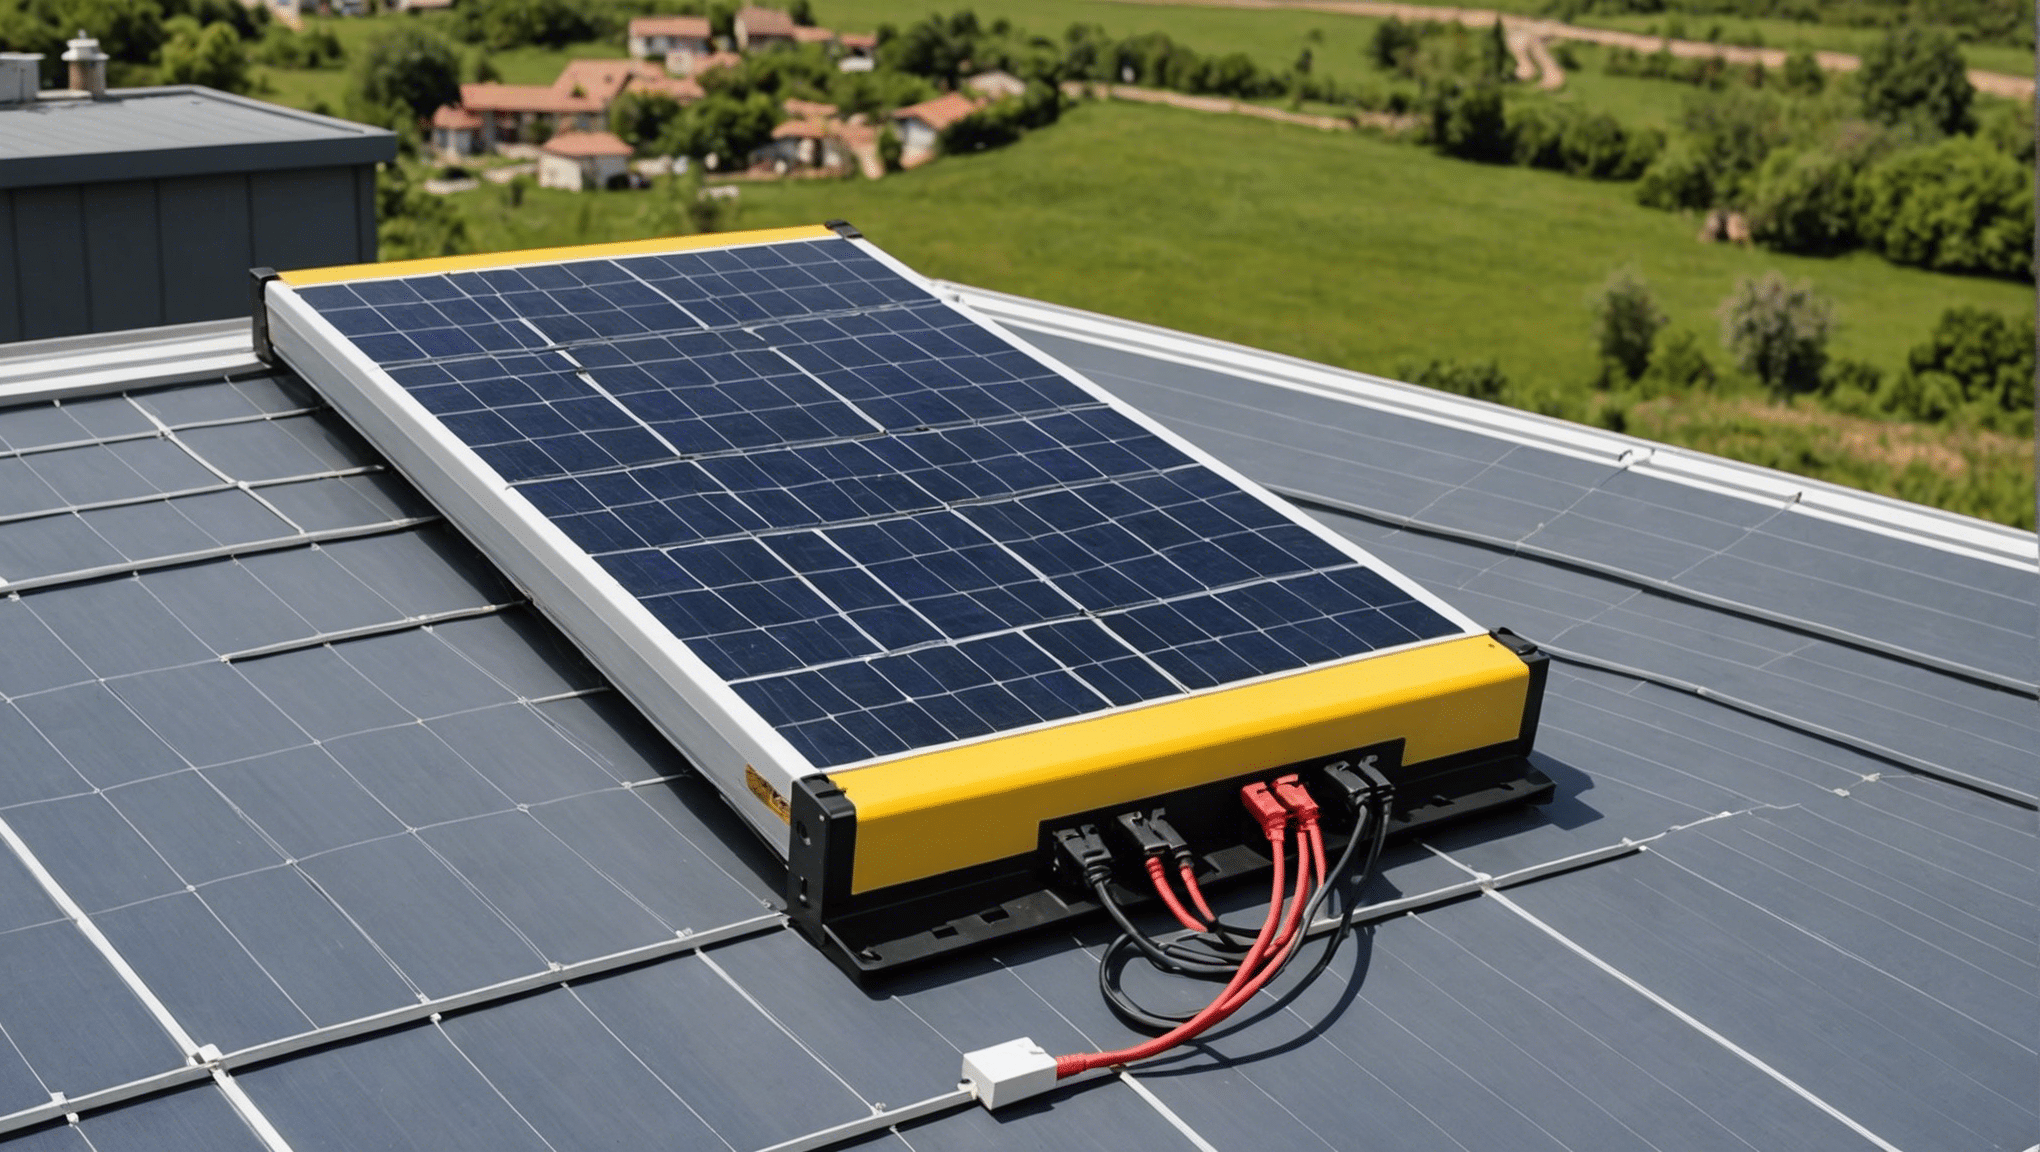 découvrez comment choisir la bonne batterie pour alimenter un panneau solaire de 6000w et estimez son prix. conseils et astuces pour une alimentation efficace.